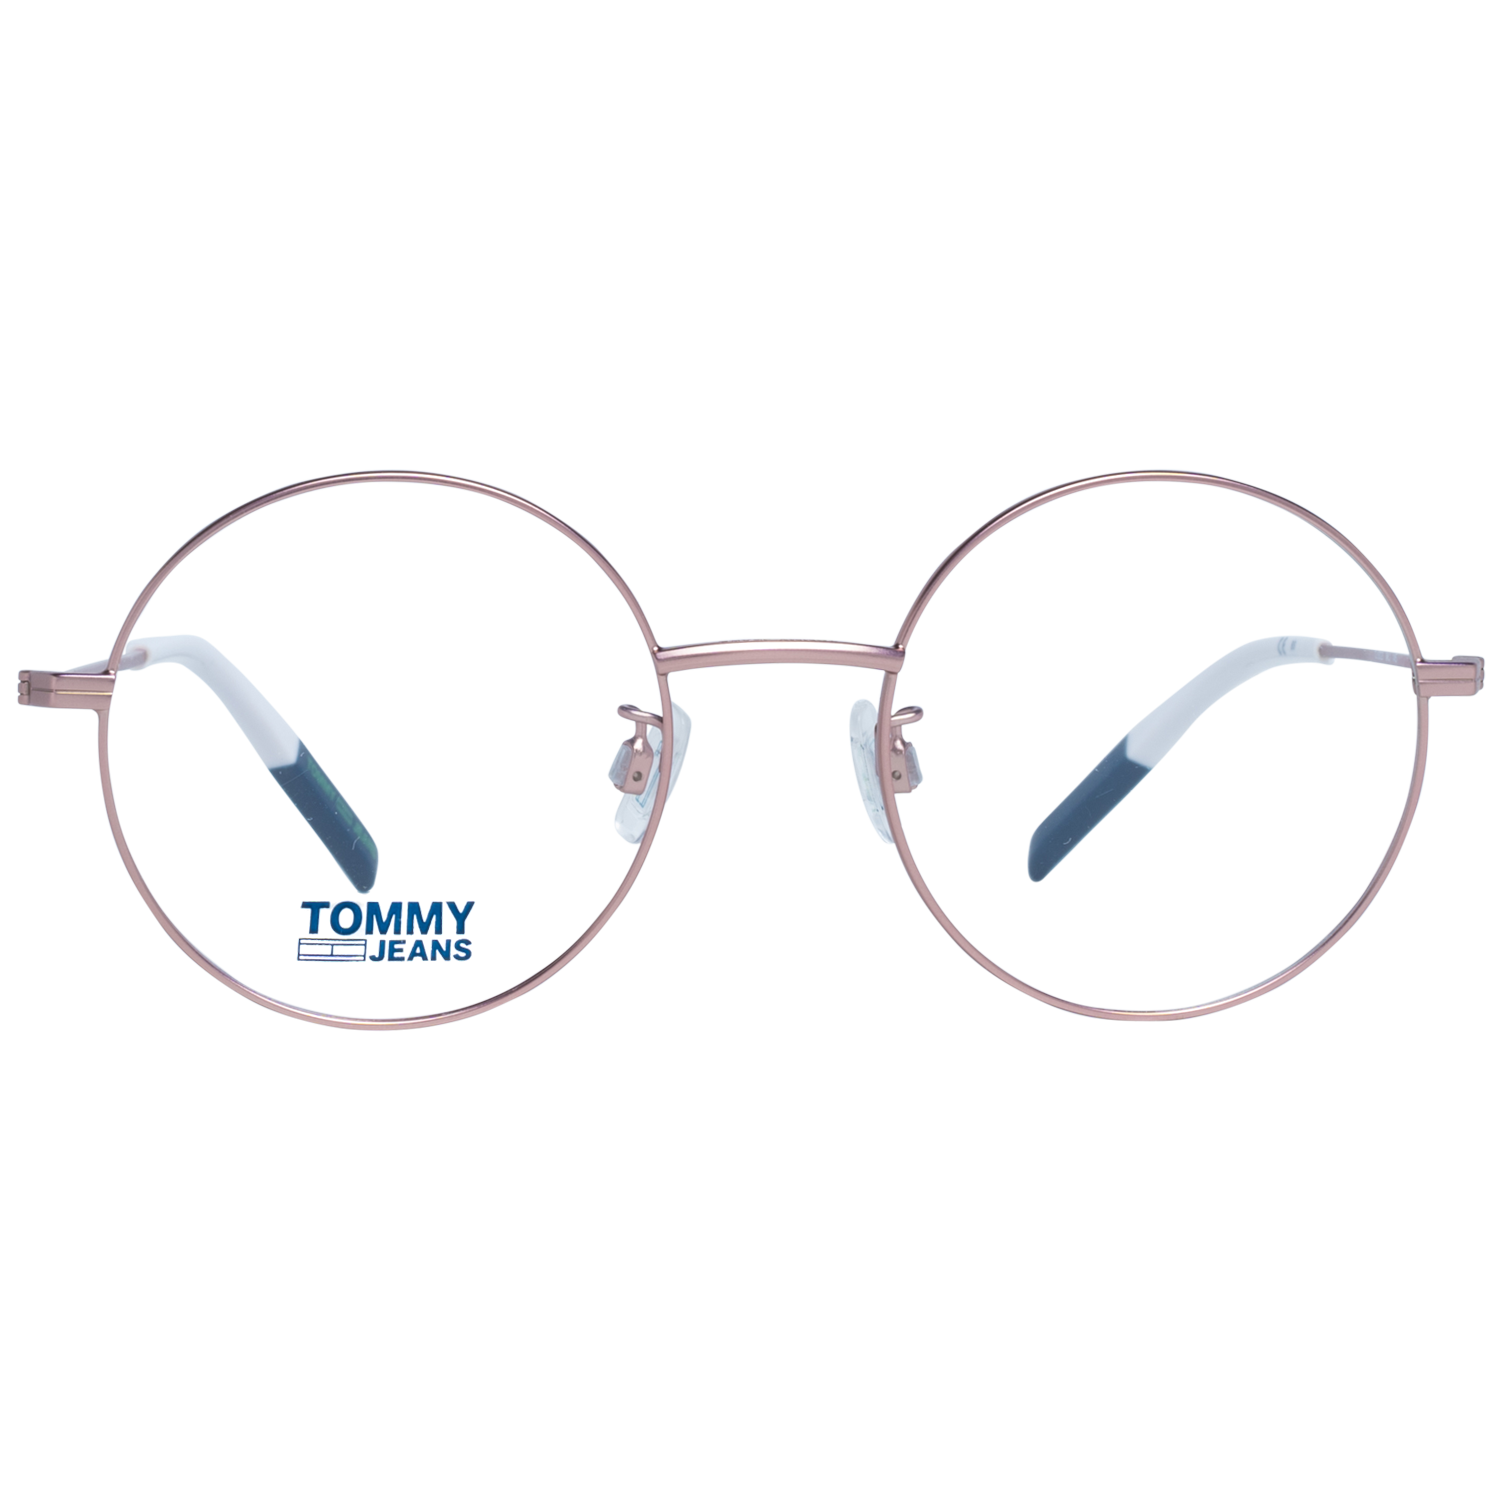 Tommy Hilfiger Frames Tommy Hilfiger Optical Frame TJ 0023 8KJ 49 Eyeglasses Eyewear UK USA Australia 